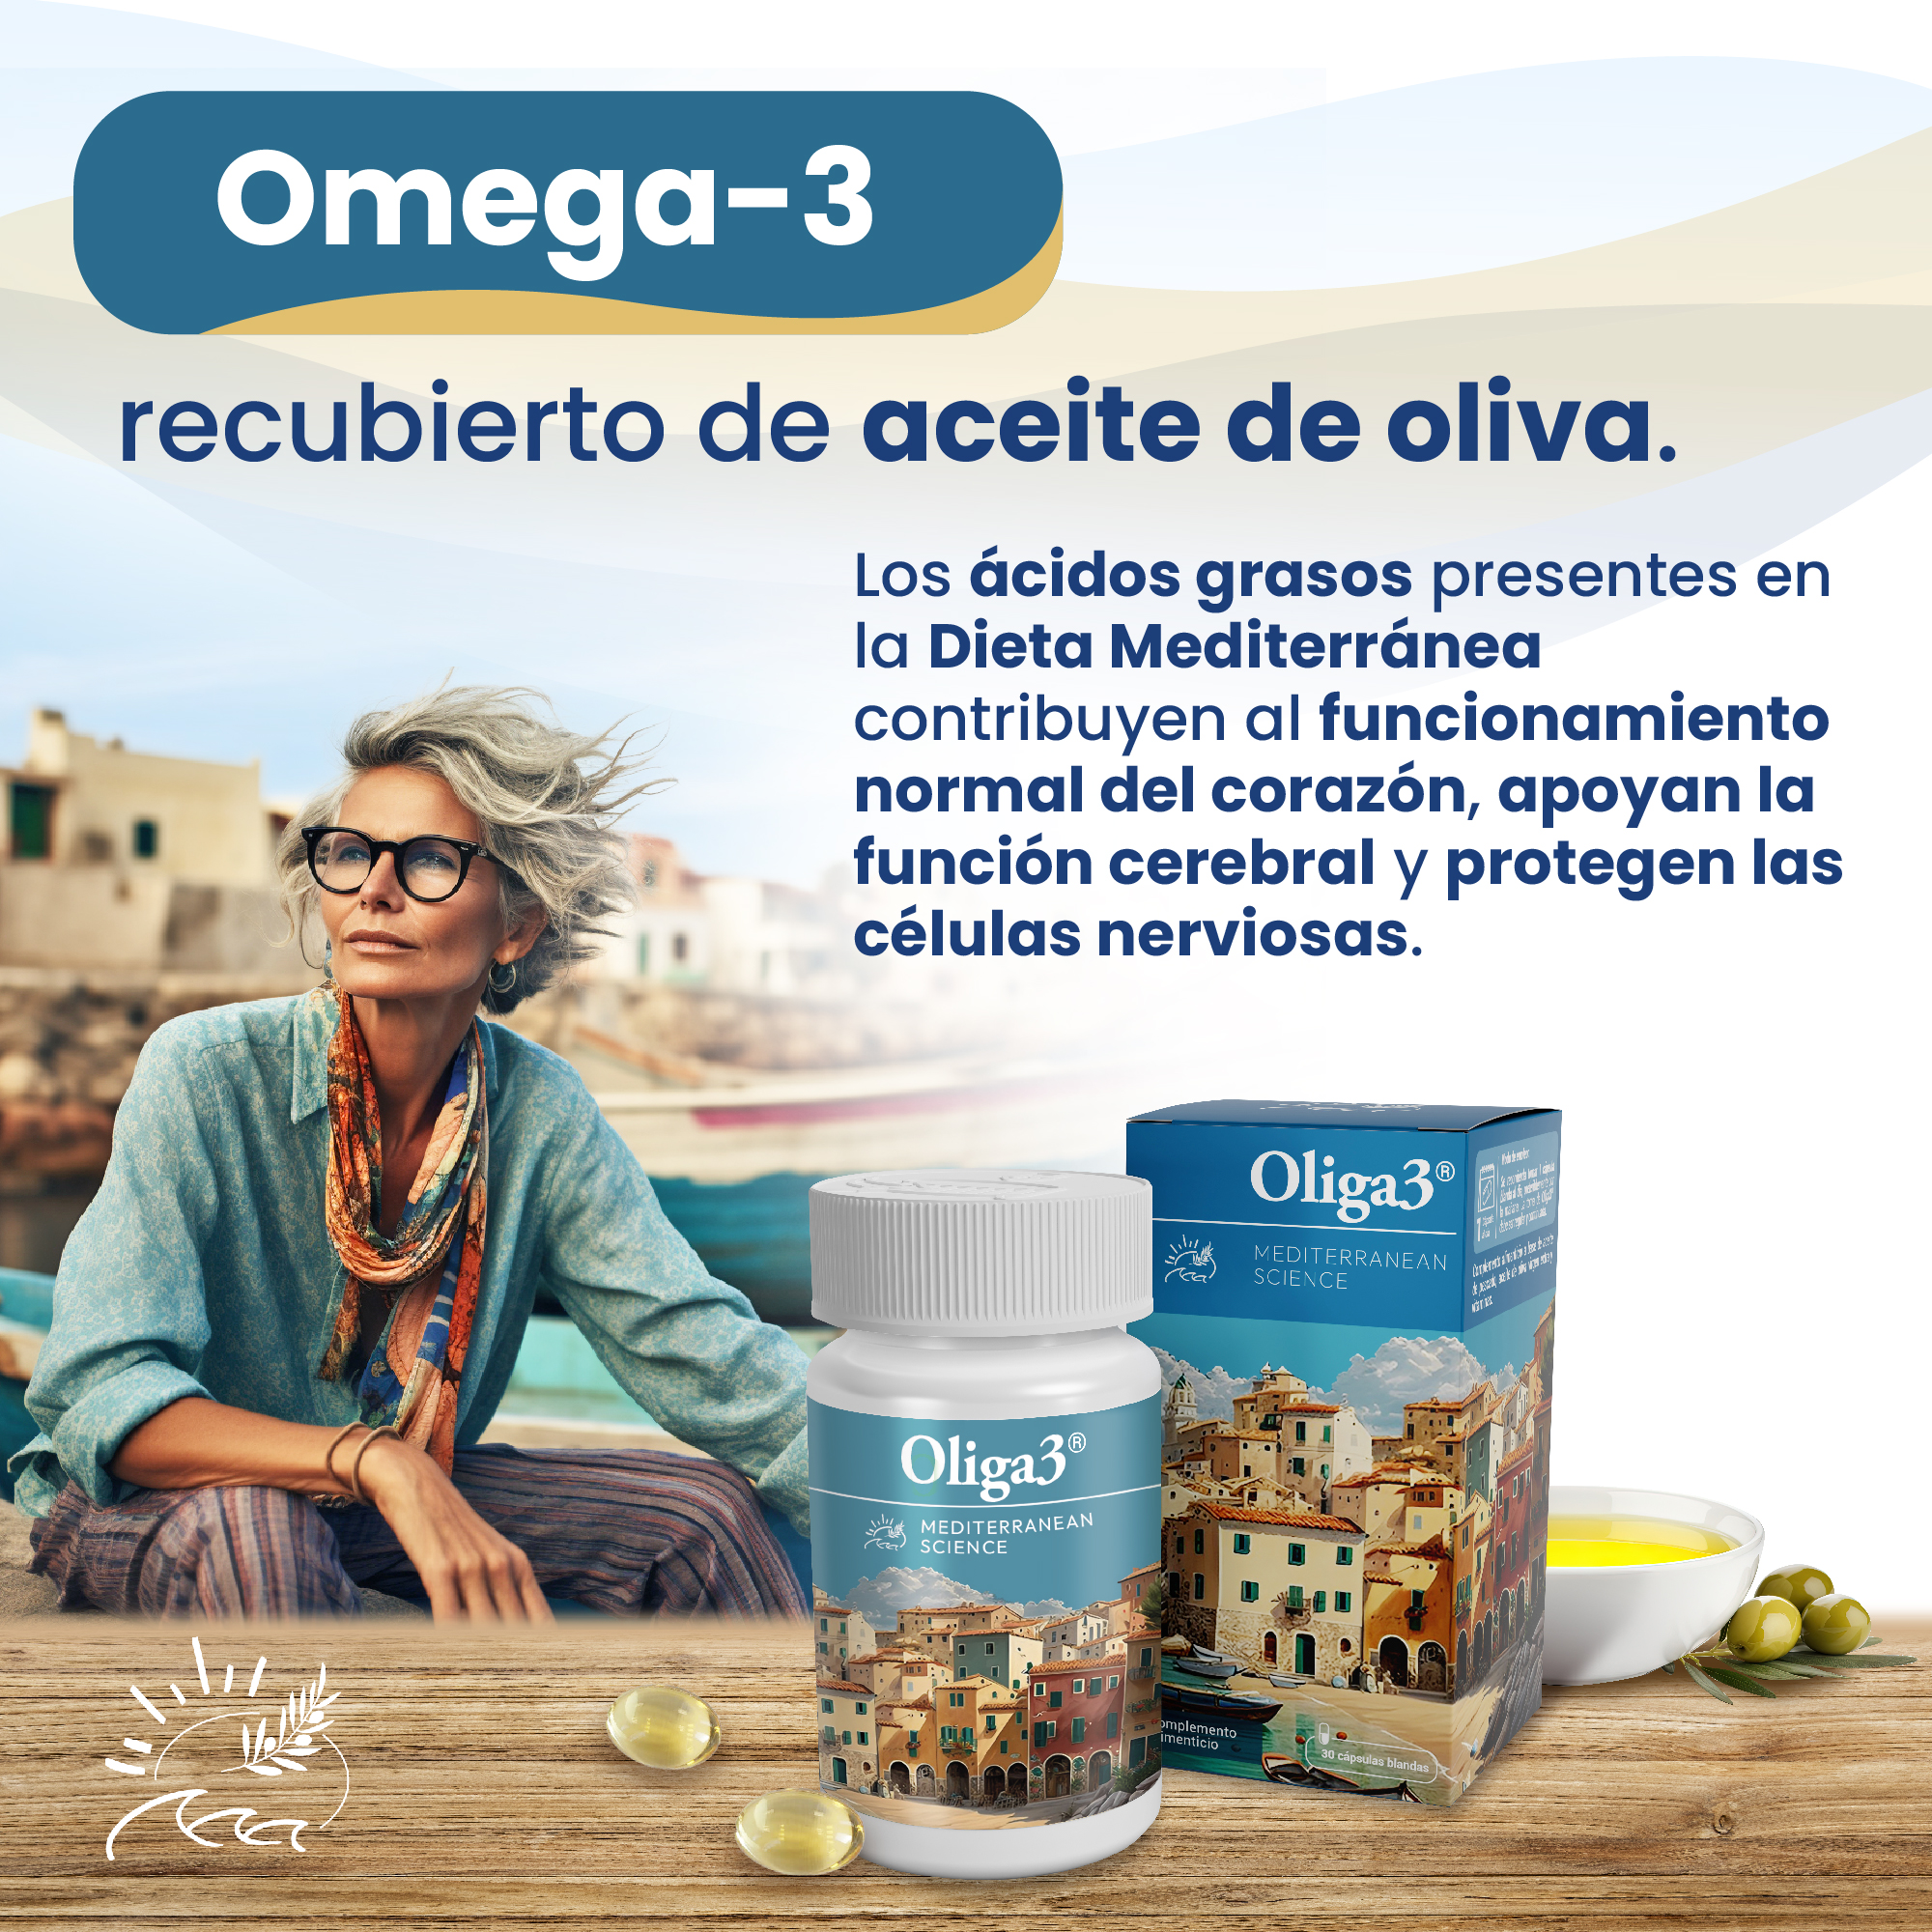 Oliga3 con Omega-3 y aceite de oliva